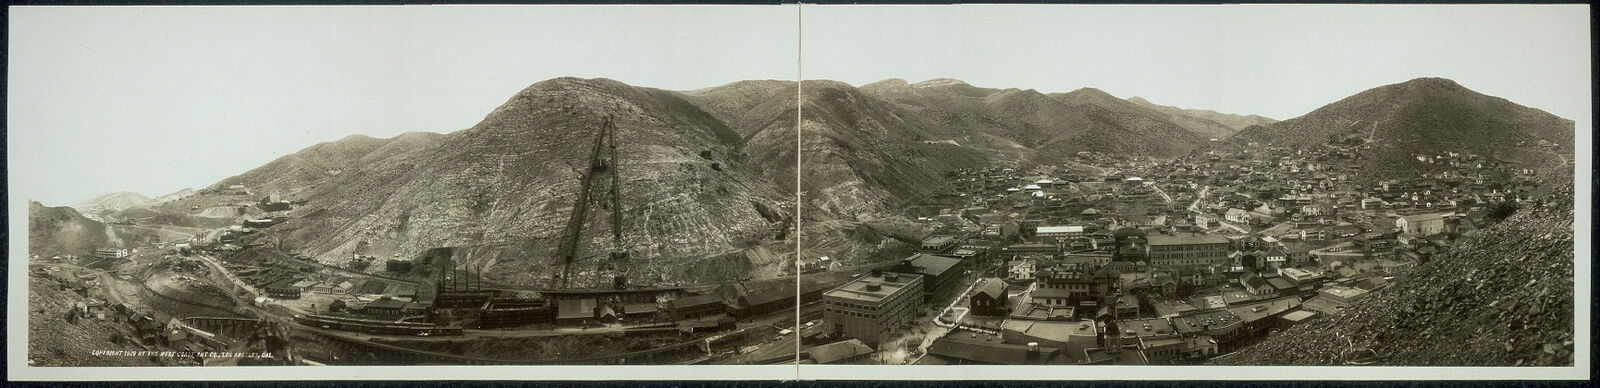 Photo:1909 Panorama of Bisbee,Arizona